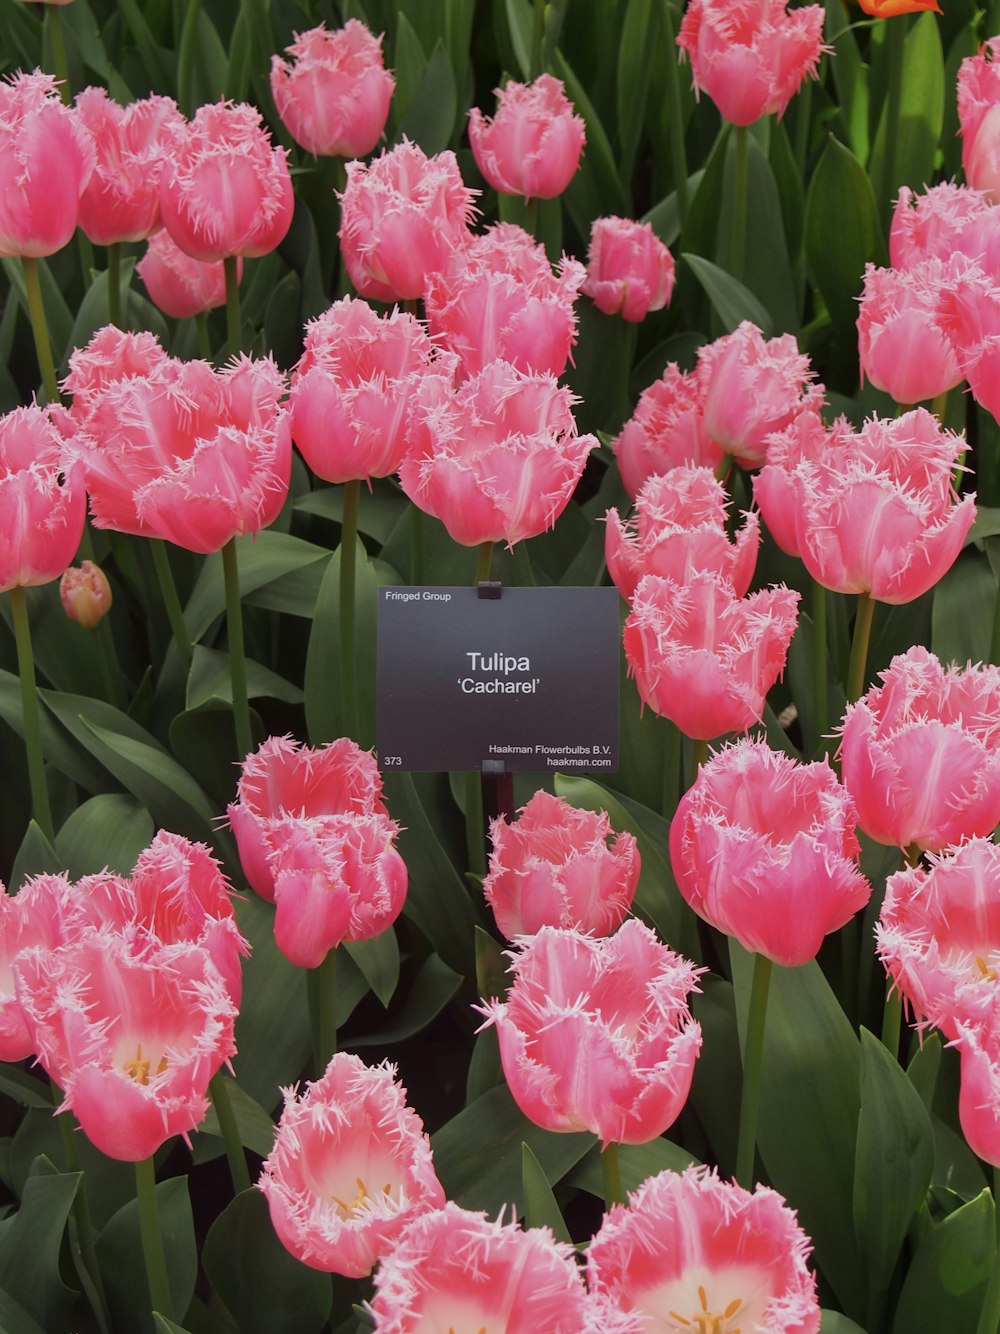 um campo de tulipas cor-de-rosa com uma etiqueta no meio